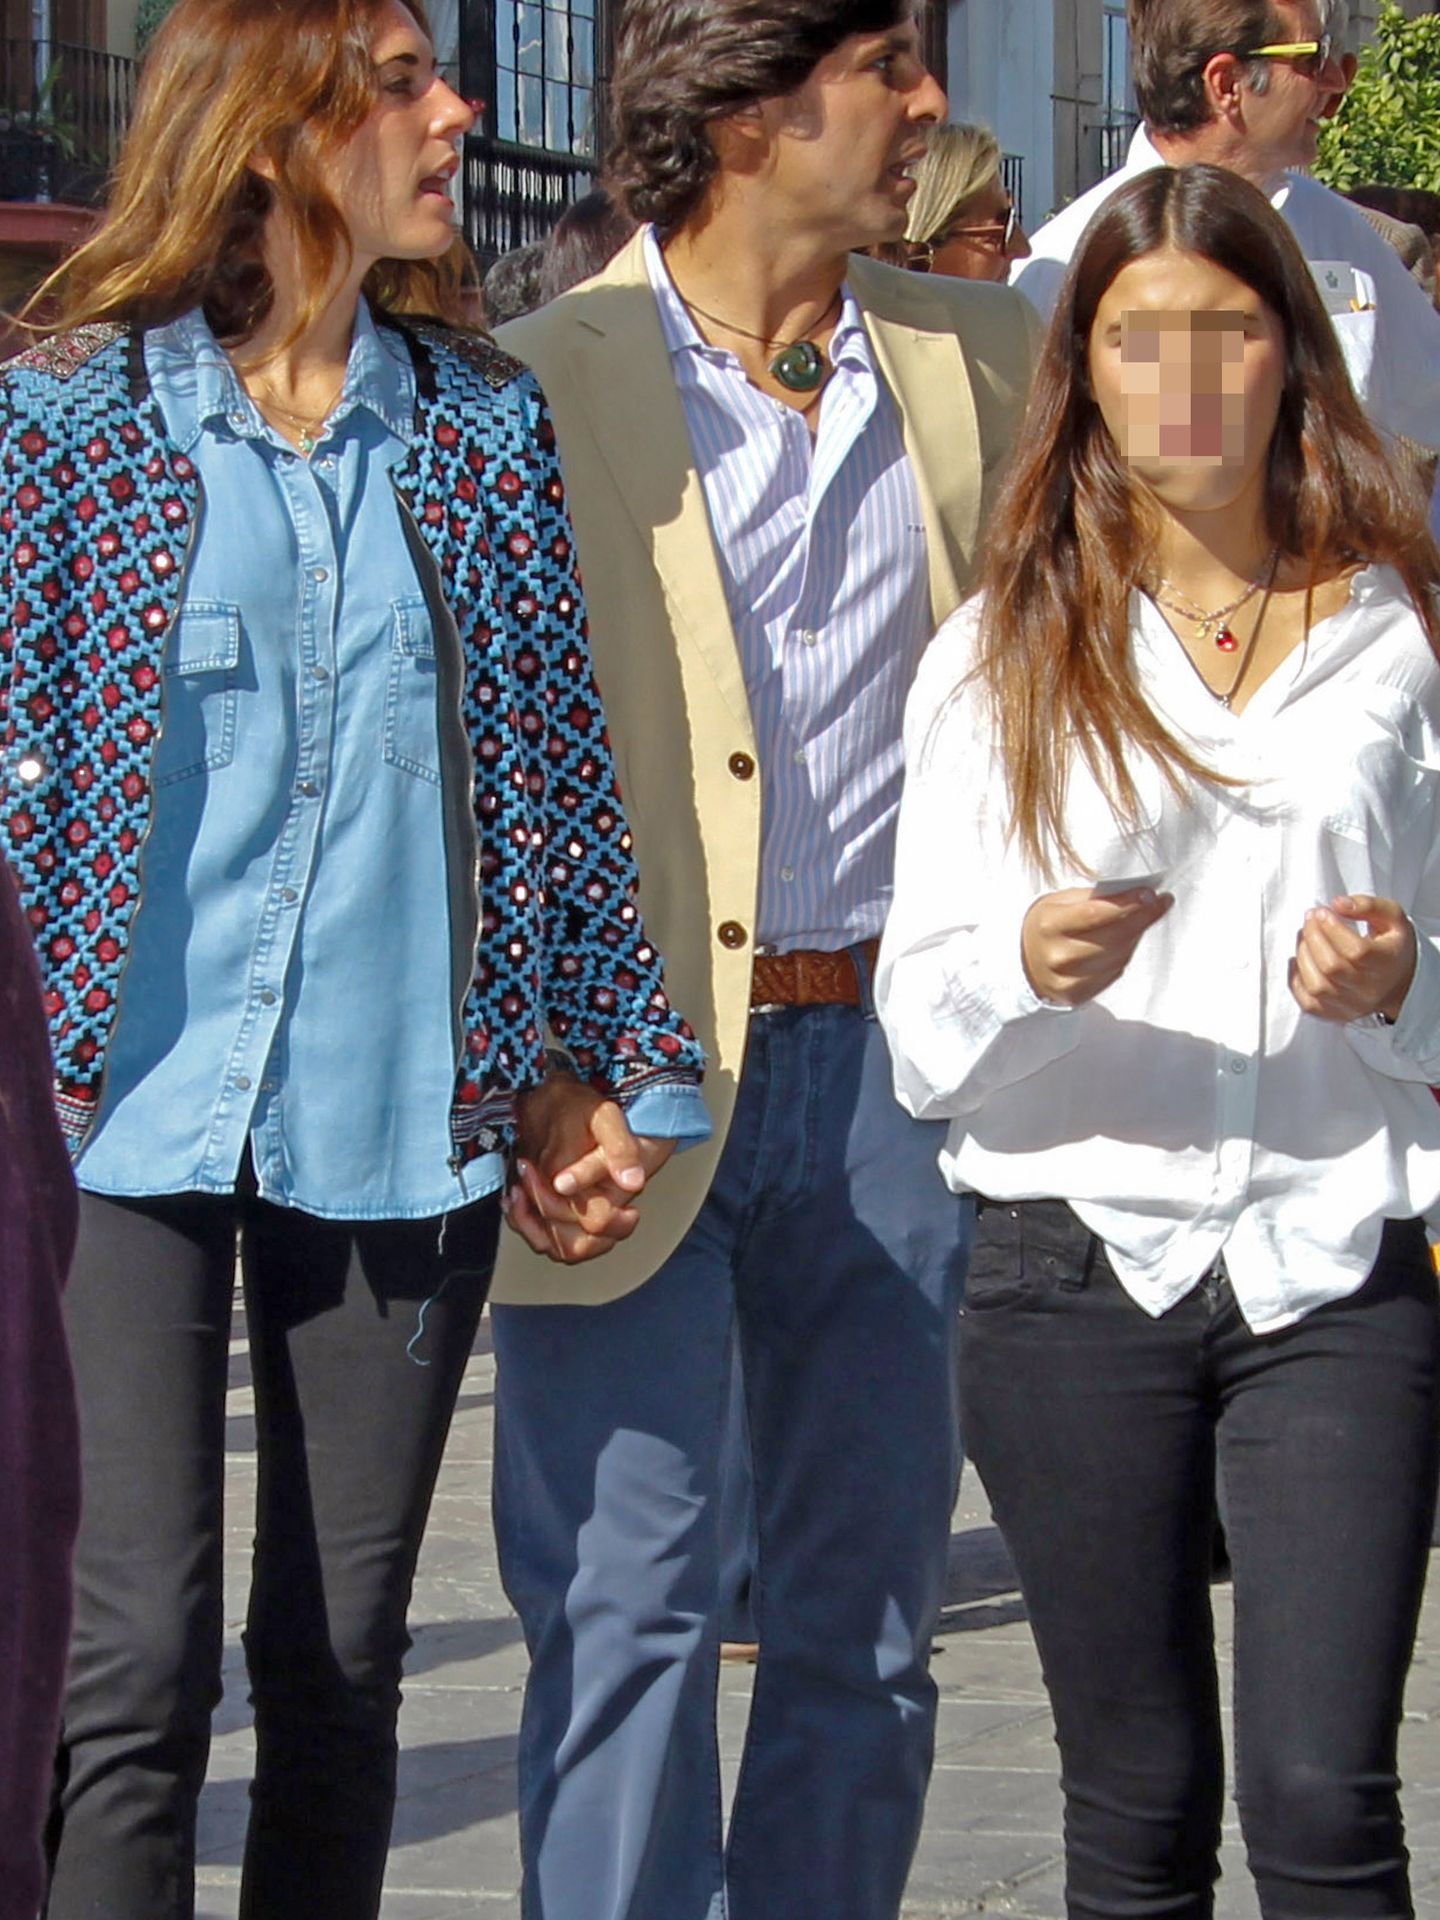 'Tana' junto a su padre y Lourdes Montes en Sevilla (I.C.)